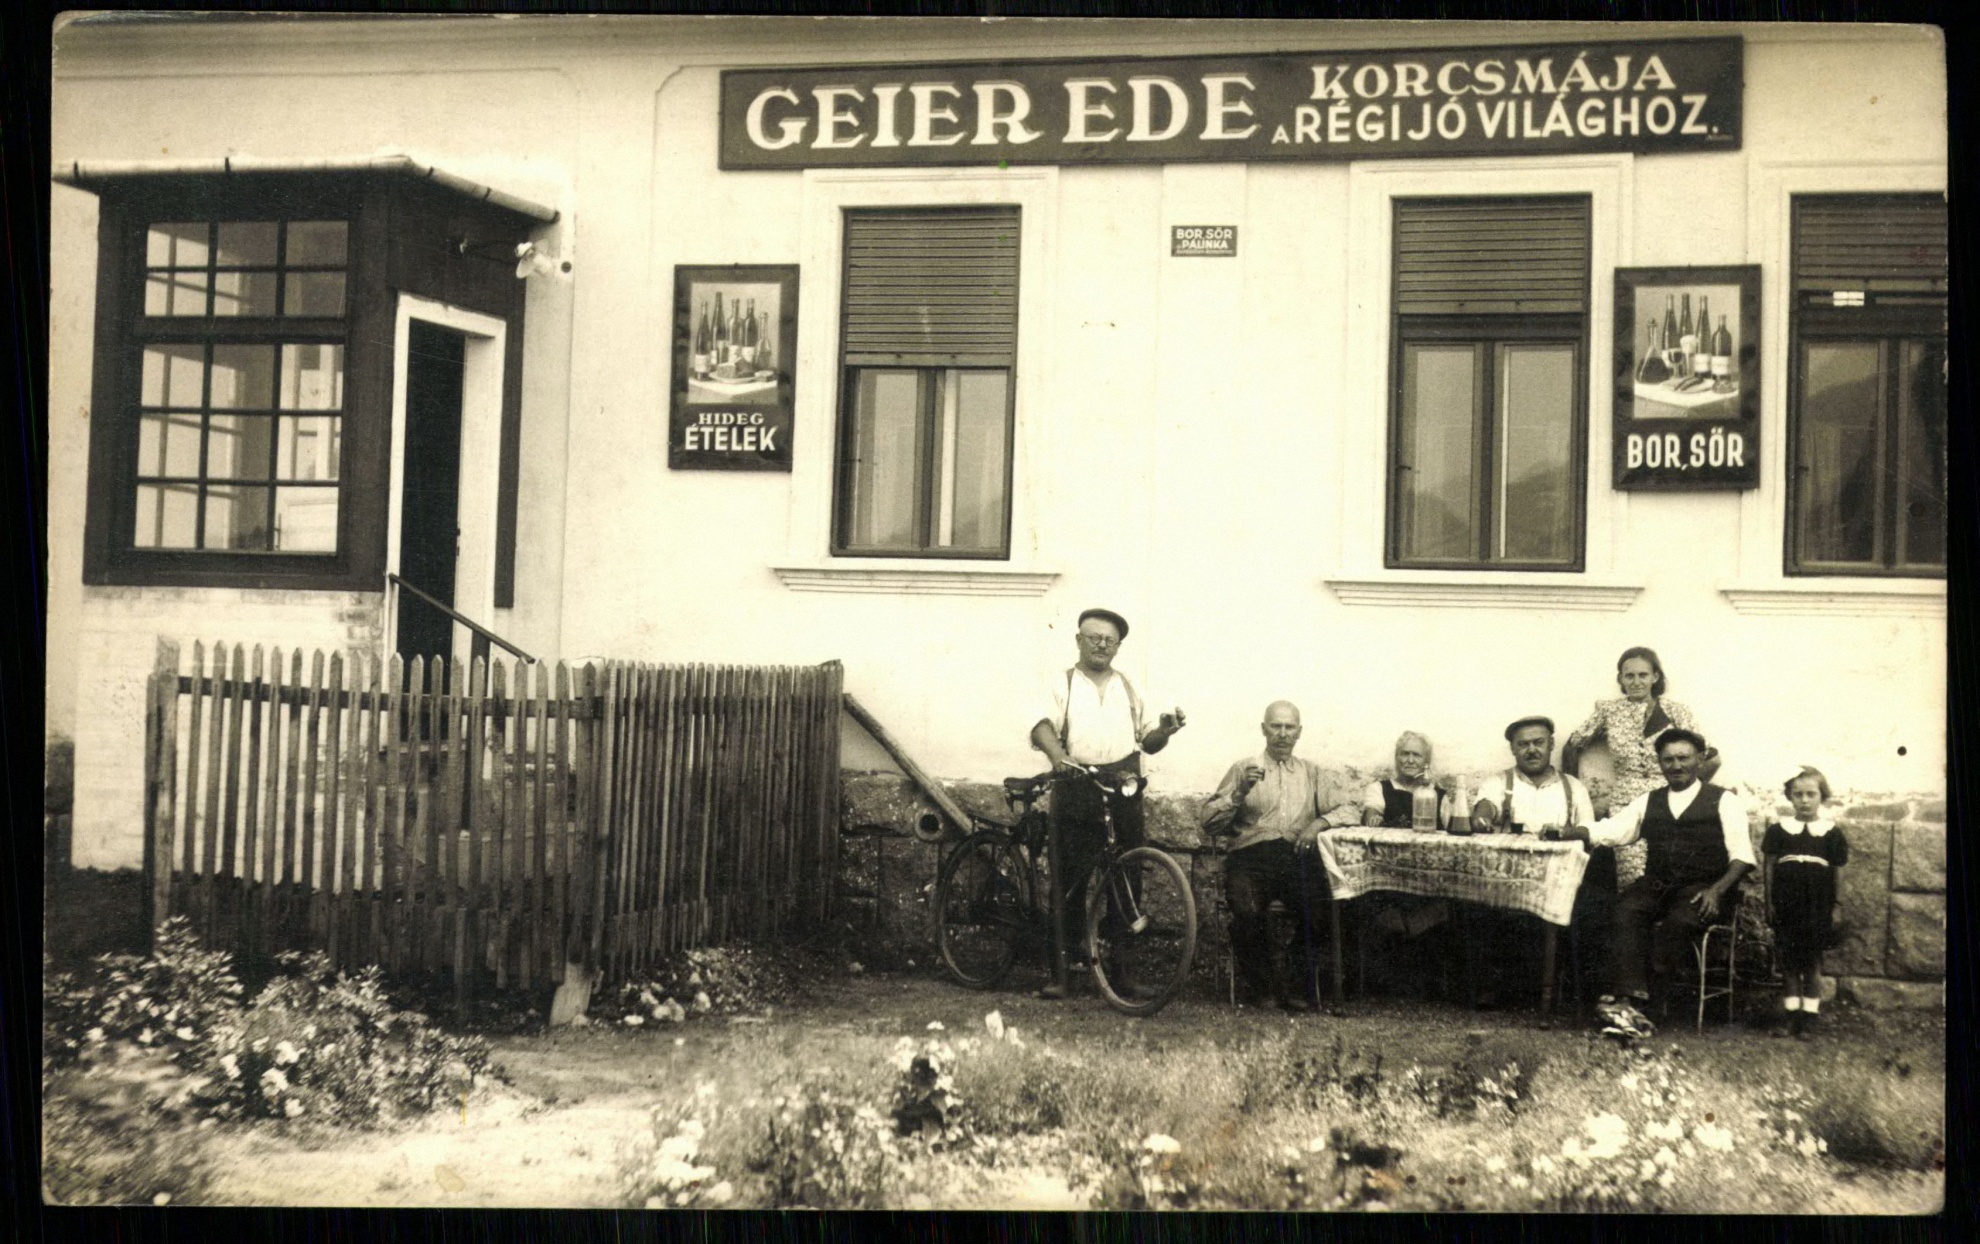 Geier Ede korcsmája a Régi jó világhoz (Magyar Kereskedelmi és Vendéglátóipari Múzeum CC BY-NC-ND)